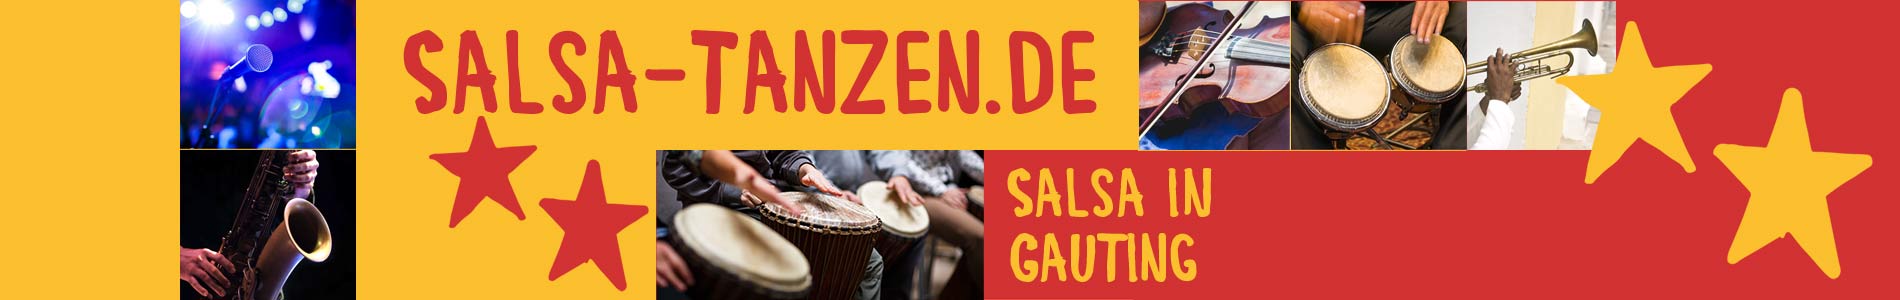 Salsa in Gauting – Salsa lernen und tanzen, Tanzkurse, Partys, Veranstaltungen